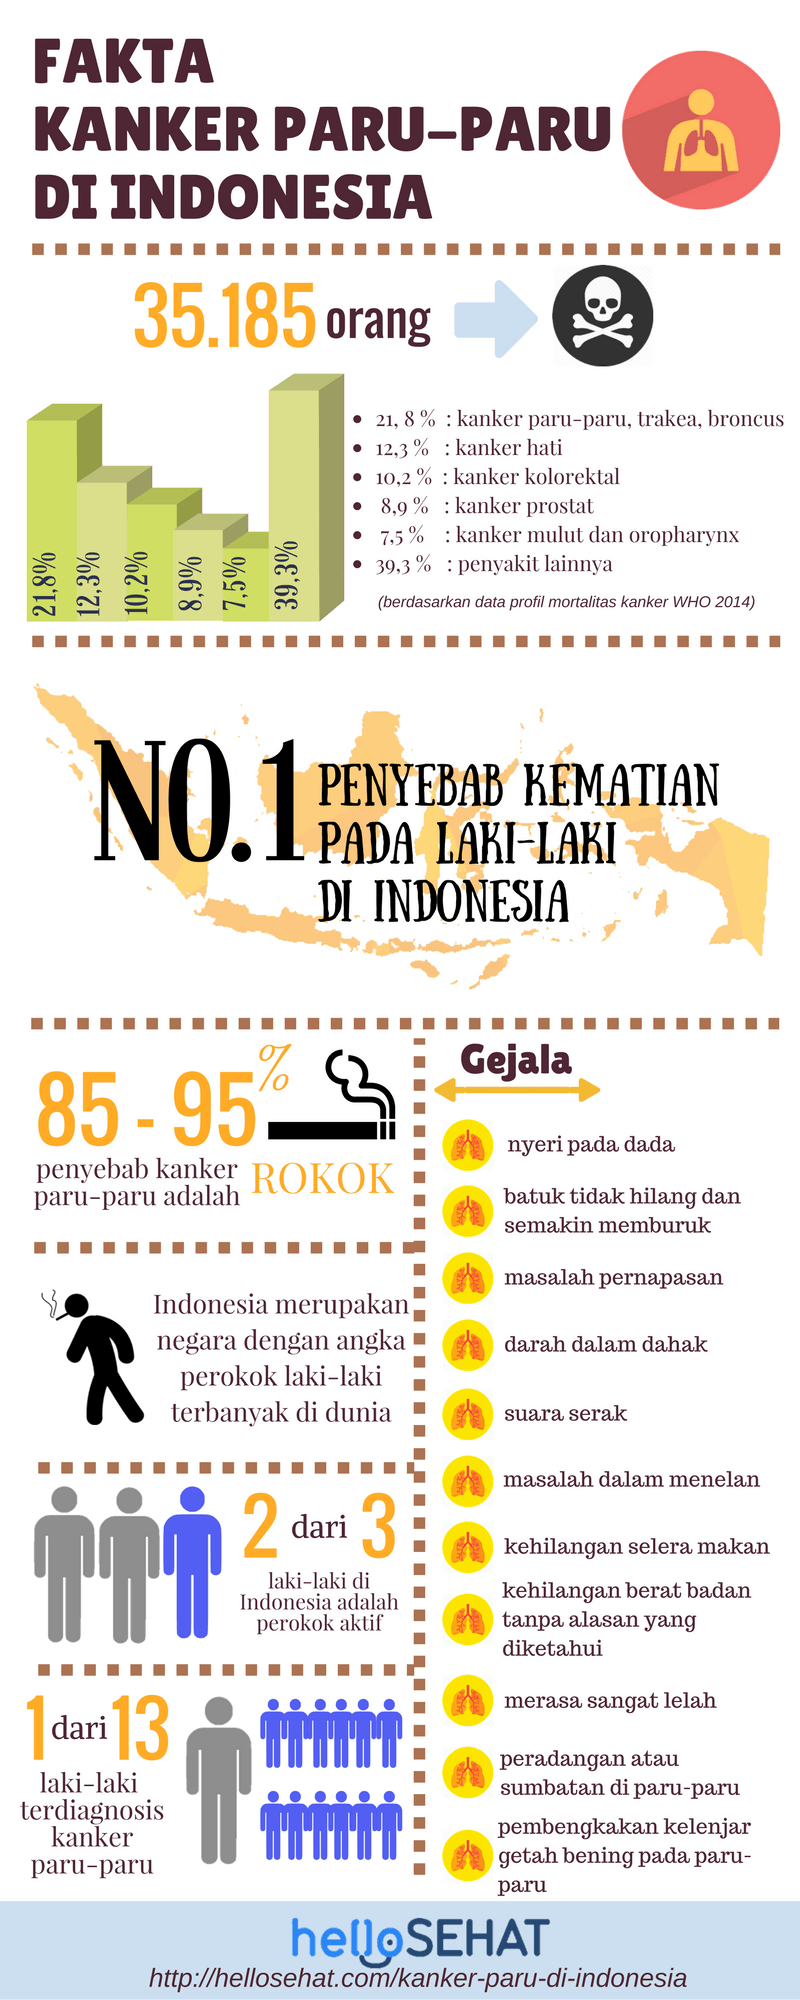 Lungenkrebs-Infektionskrankheit in Indonesien